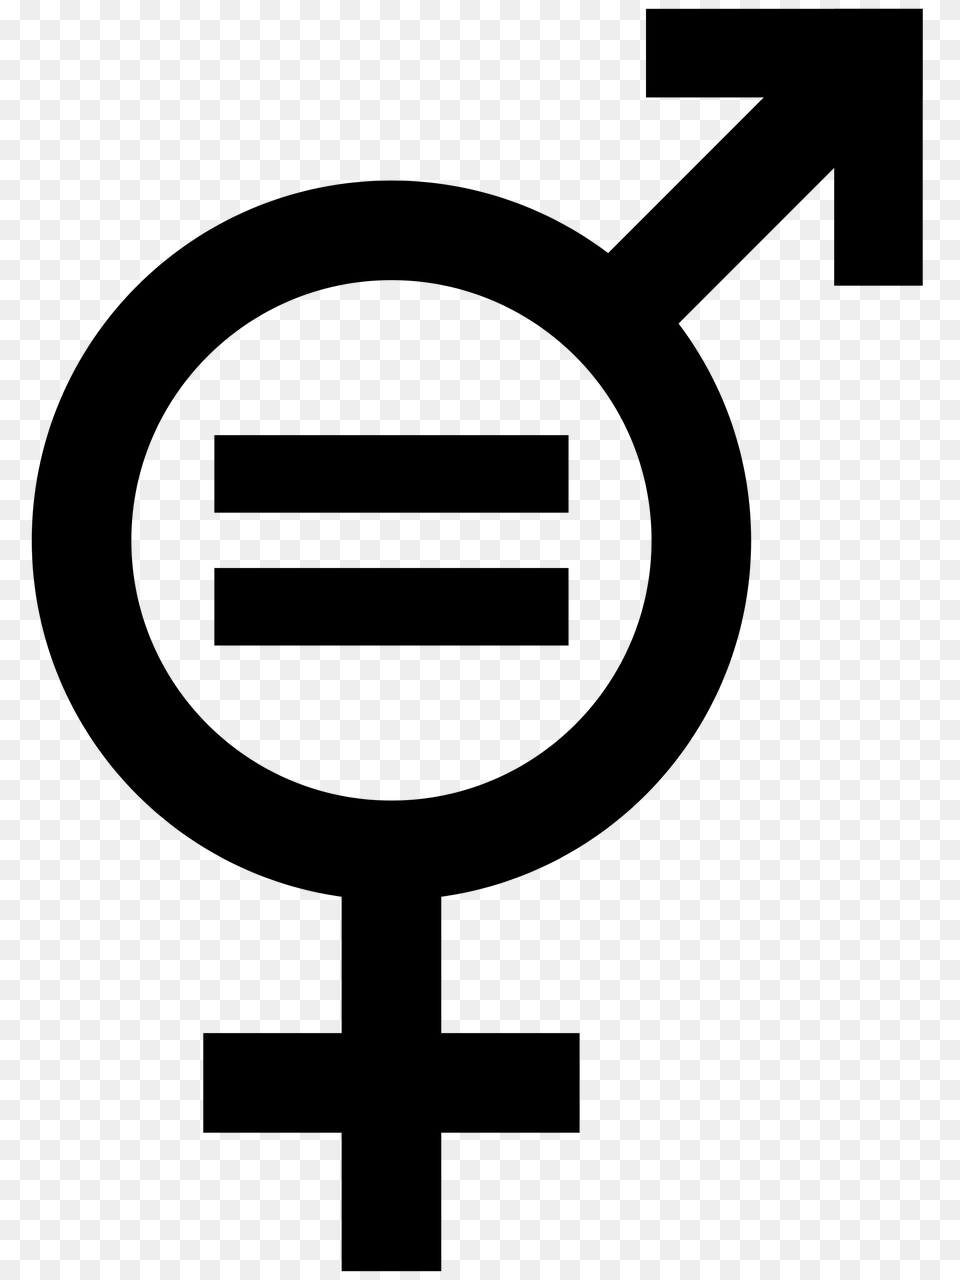 Symbol Gender Equality, Mailbox Free Transparent Png